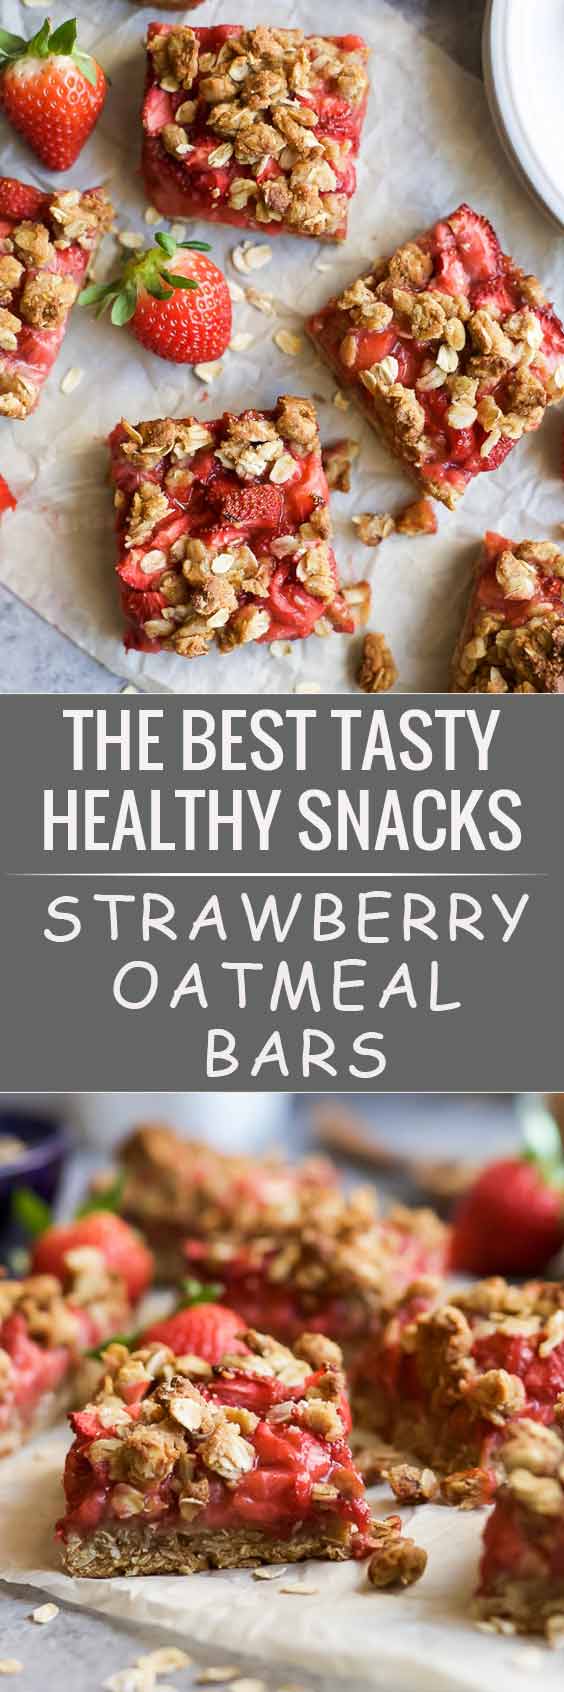 23 Best Tasty Healthy Snacks